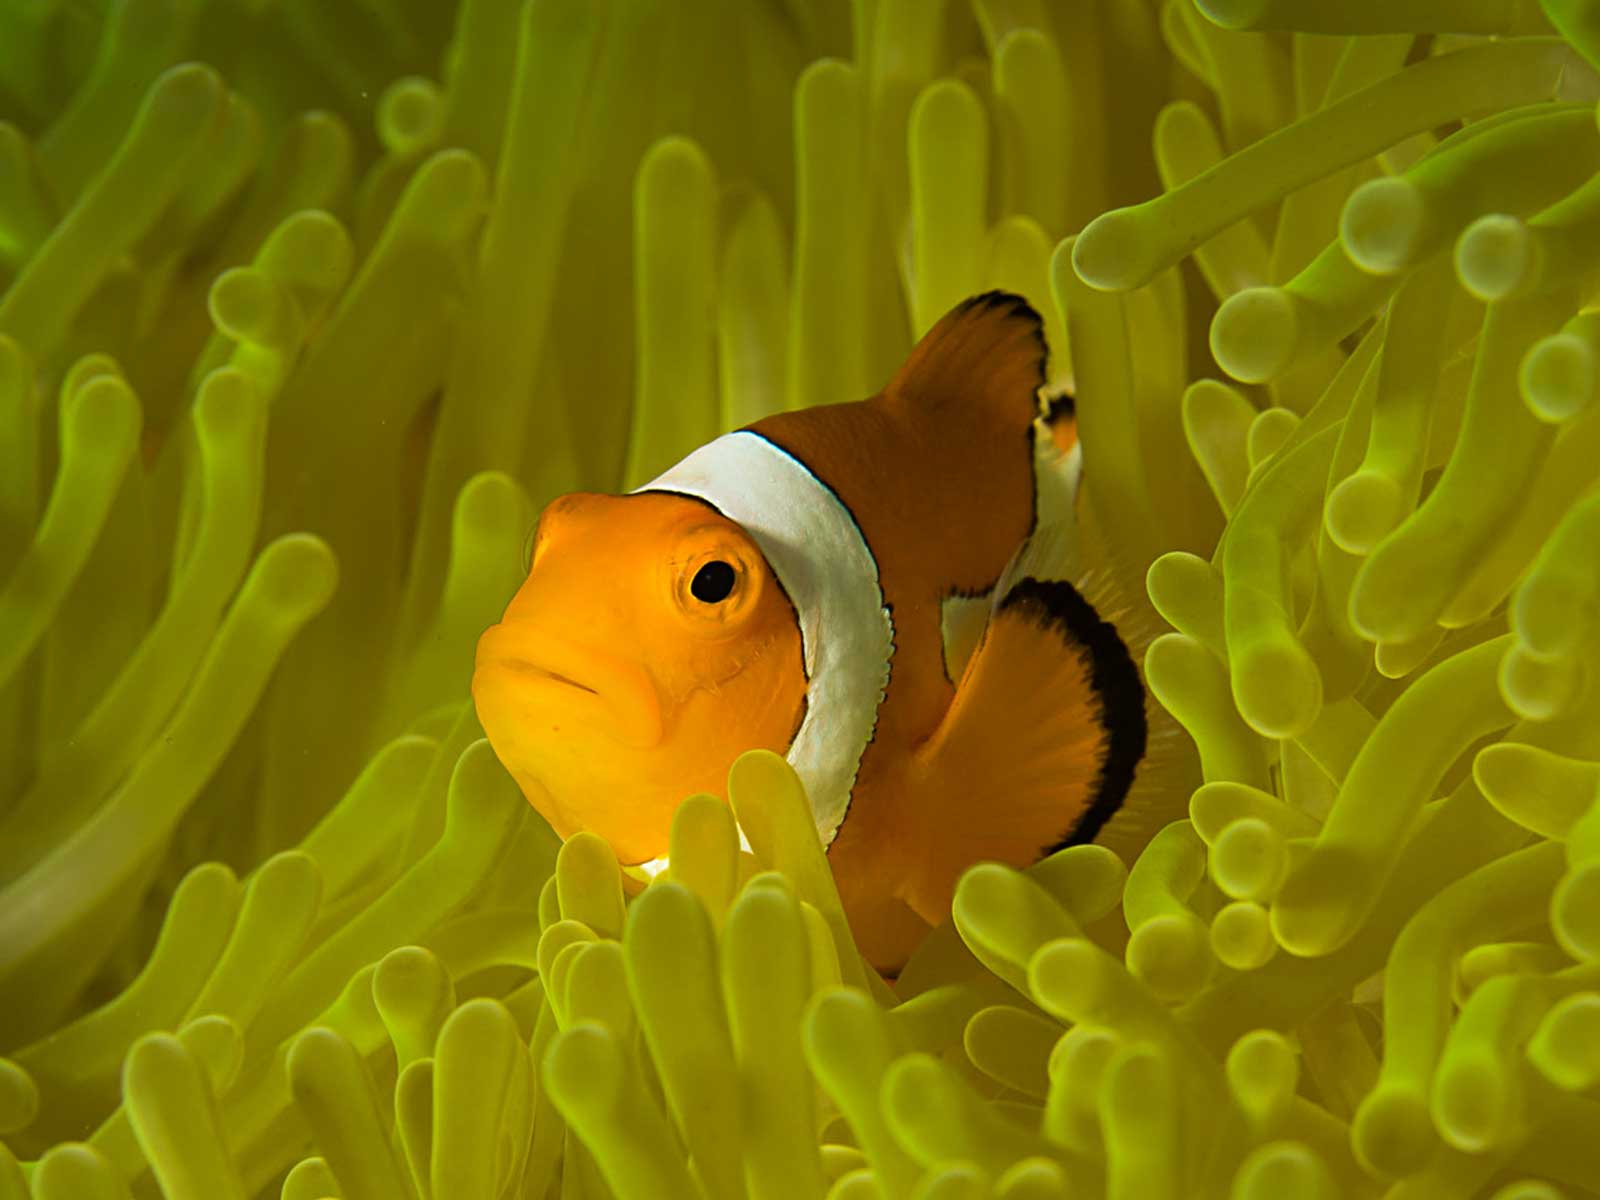 yellow clownfish